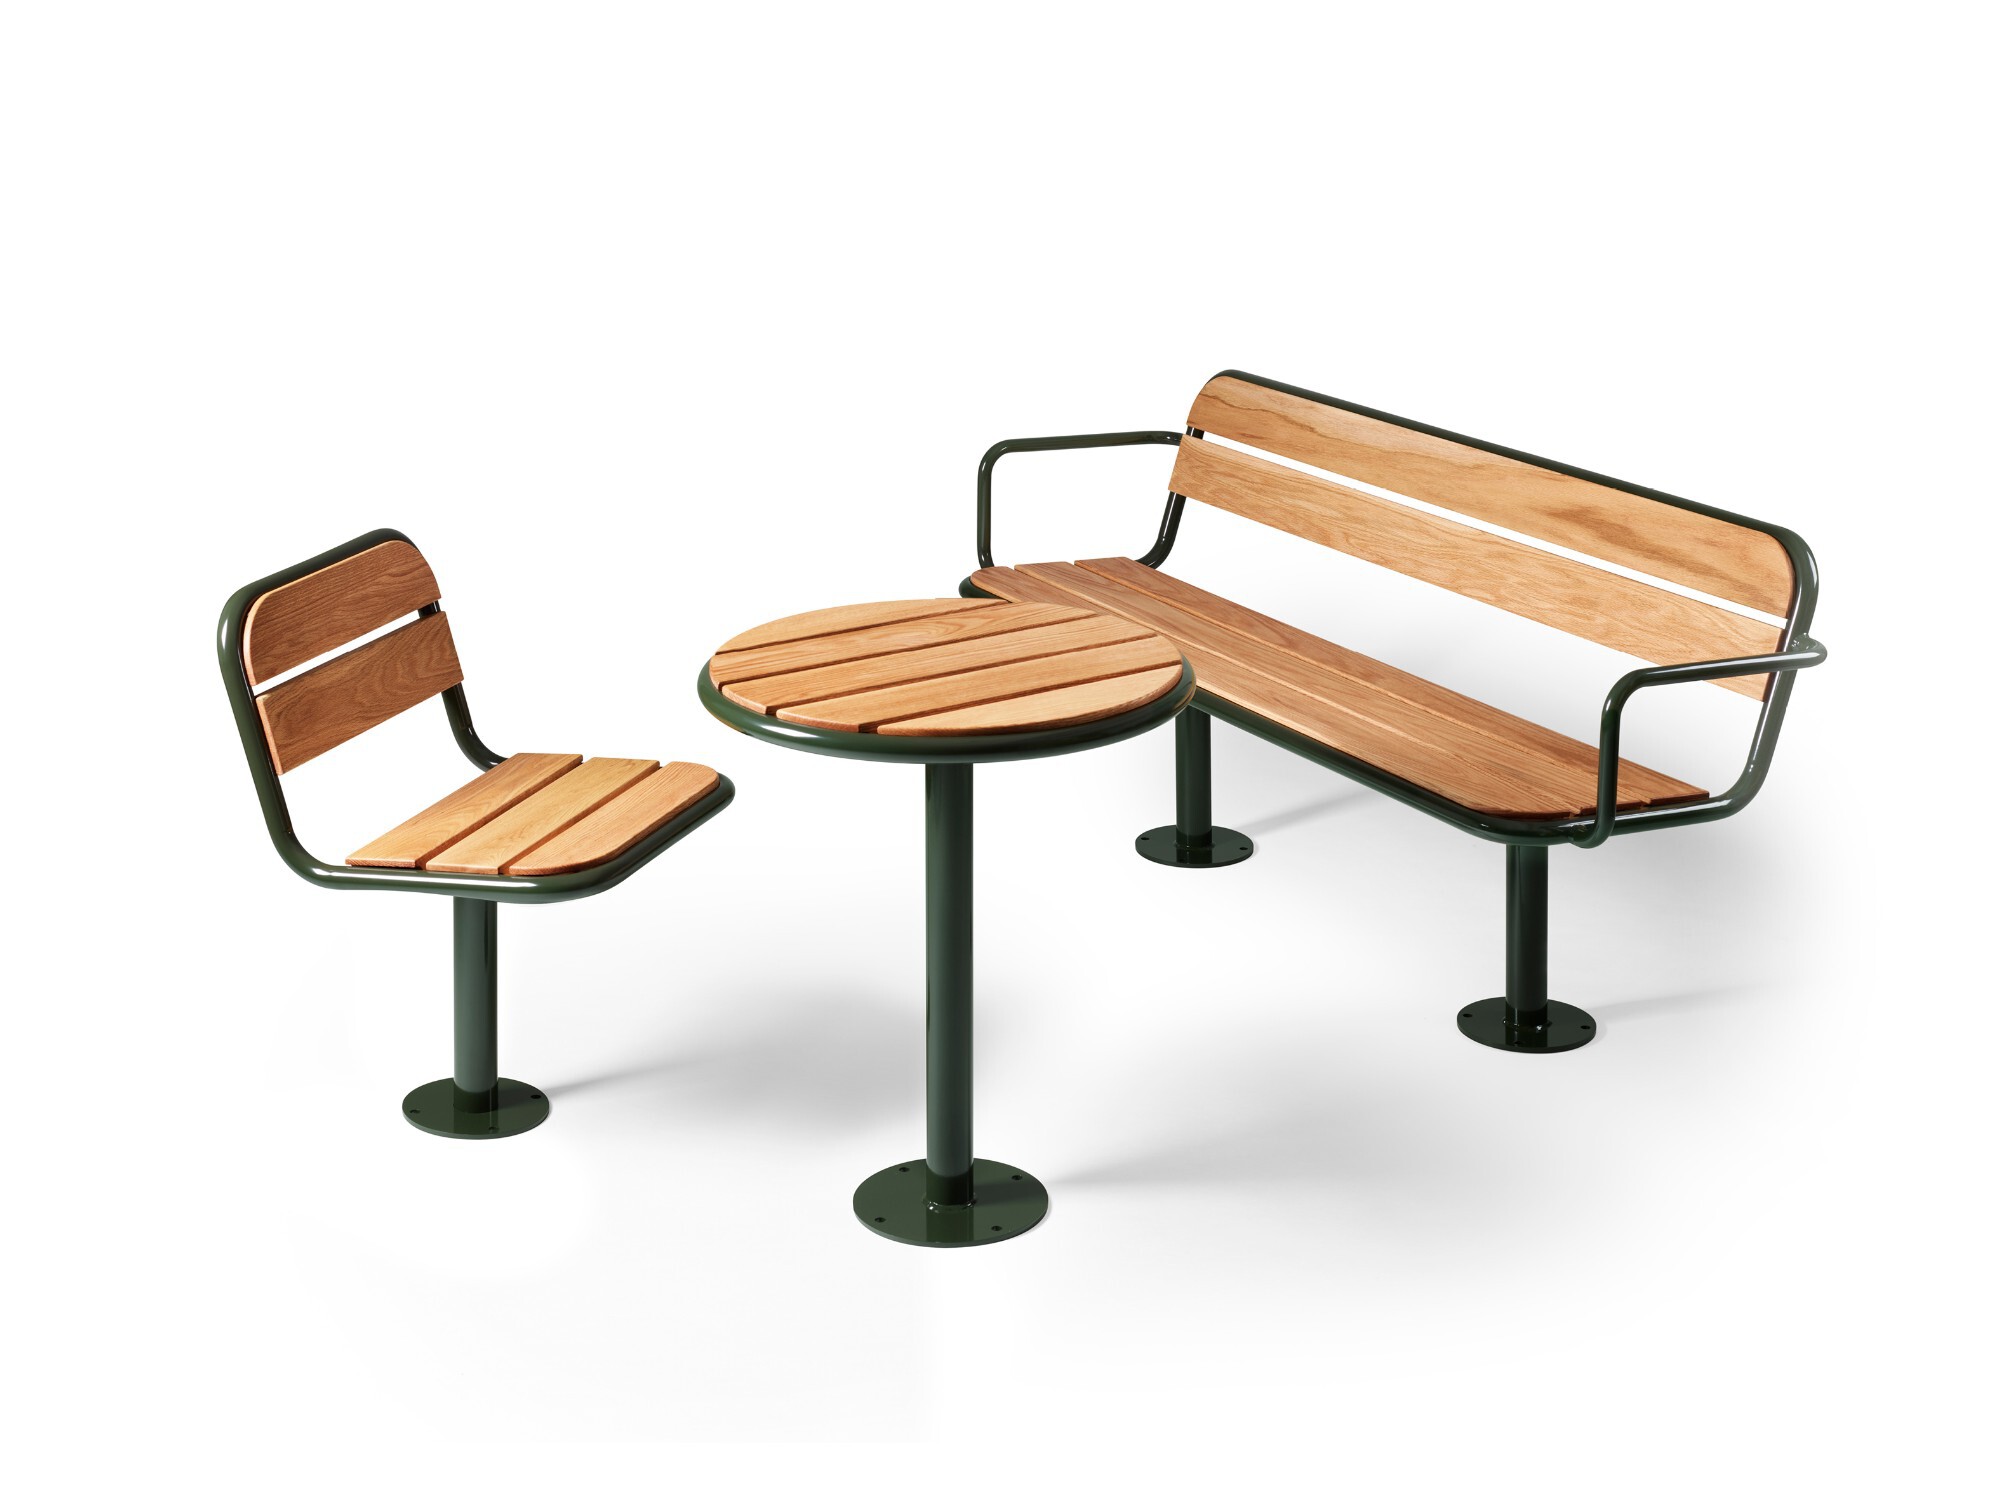 Grey stoel, tafel, bank en picknicktafel - uitgebreide serie straatmeubilair - dennenhout en eikenhout - frame in 3 standaardkleuren verkrijgbaar. Meubelserie voor de openbare ruimte.